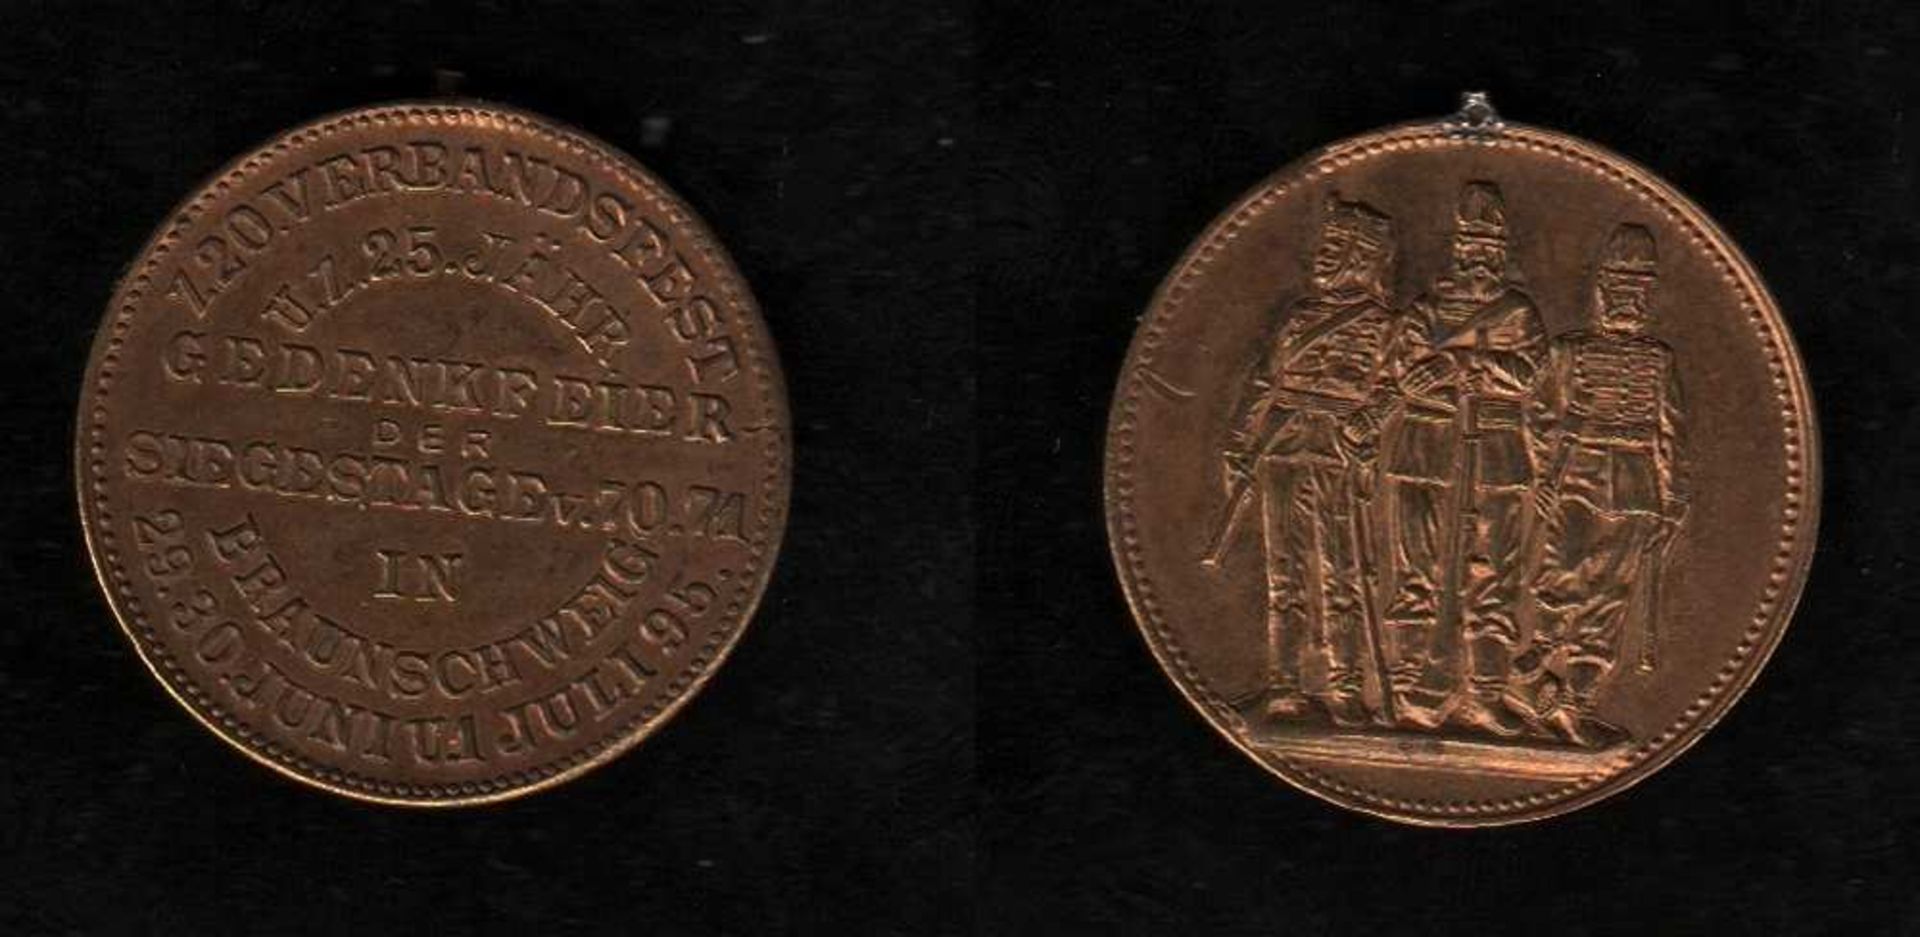 # Braunschweig. Medaille zum 5. Nordwestdeutschen Bezirksschießen in Braunschweig Juli 1874. - Image 2 of 3